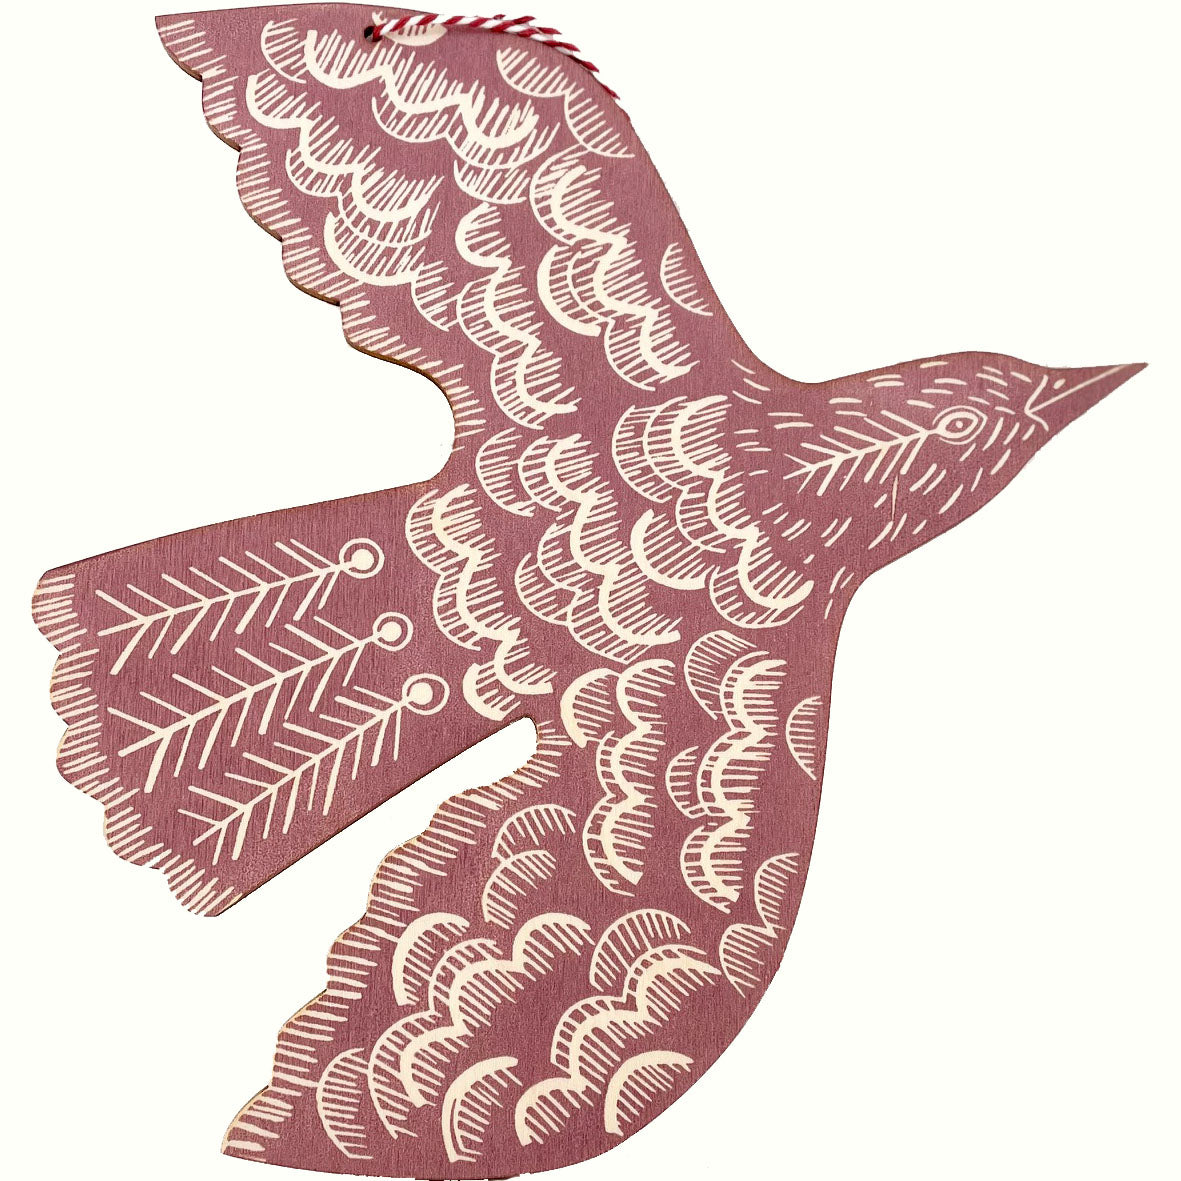 Hanging linocut Blackbird - Rose - THE BRISTOL ARTISAN